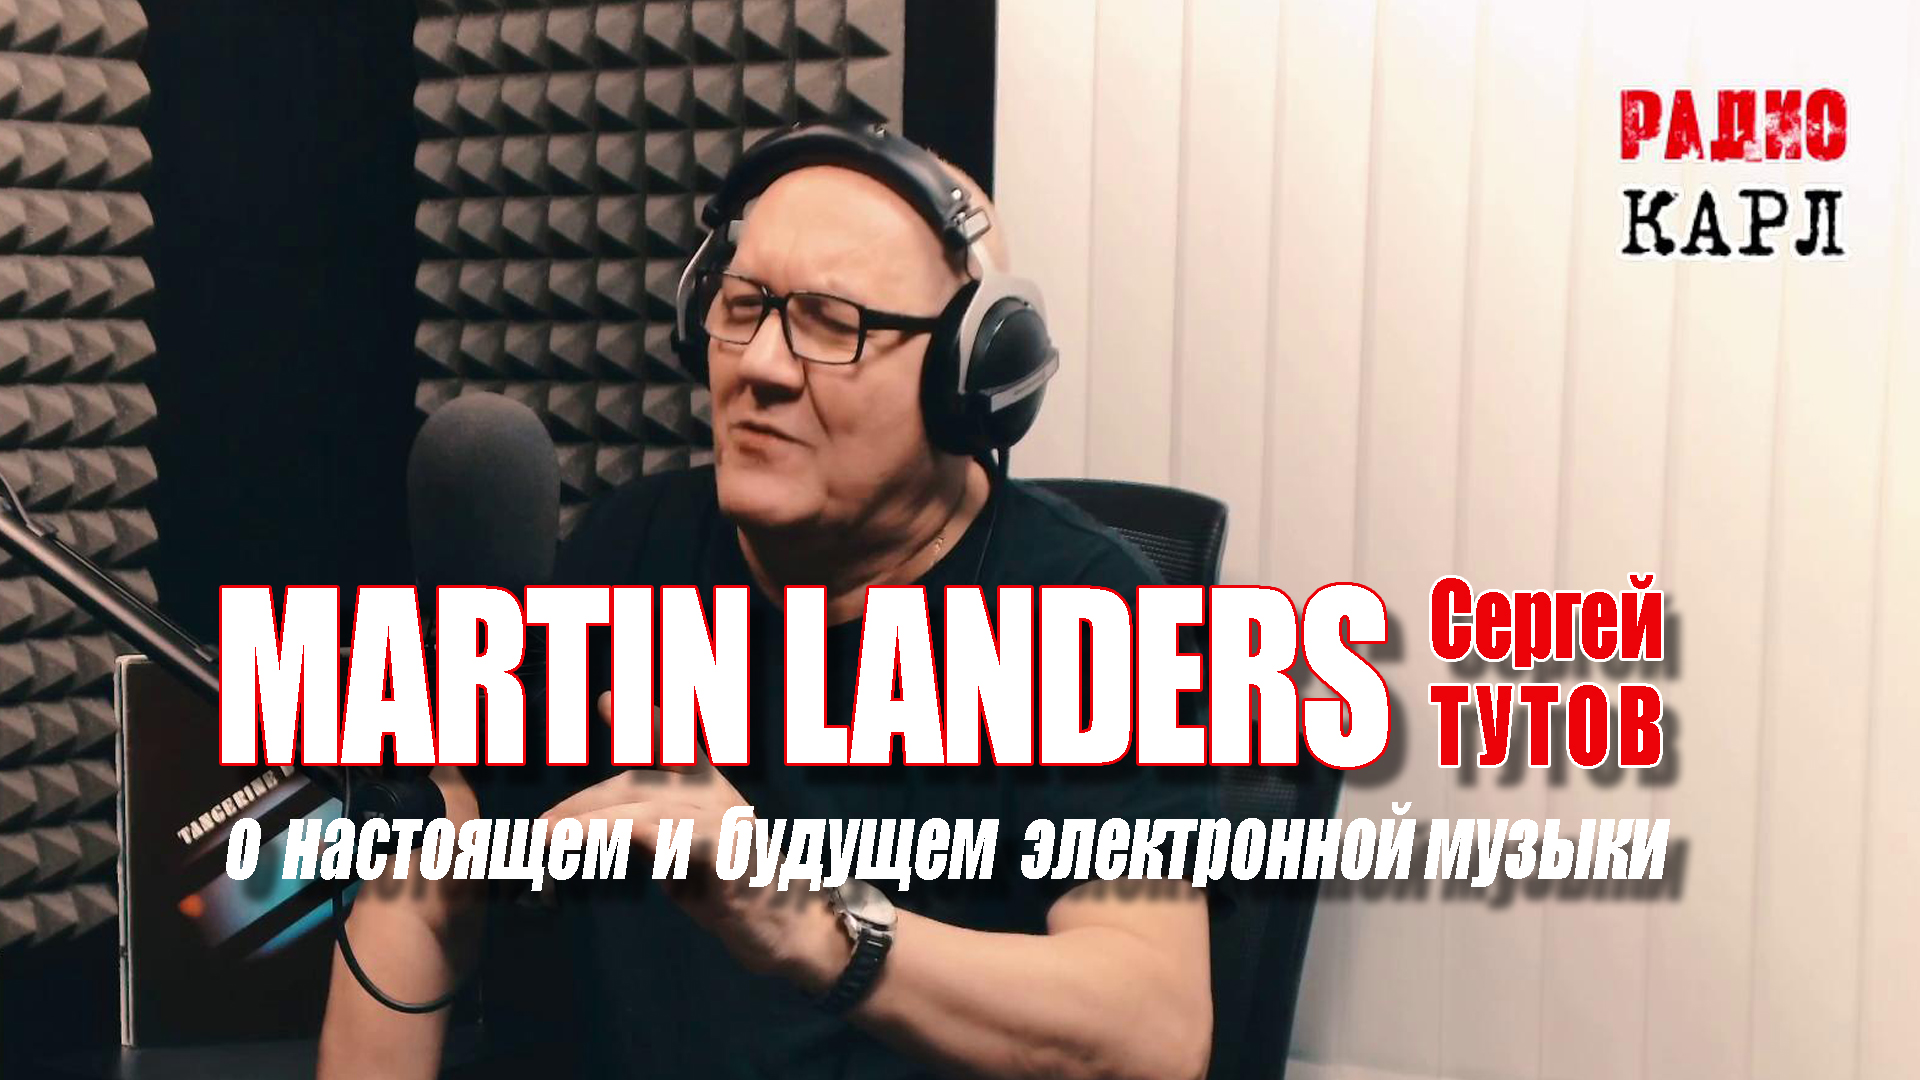 MARTIN LANDERS (Сергей ТУТОВ) и Александр КАРЛОВ о настоящем и будущем электронной музыки.